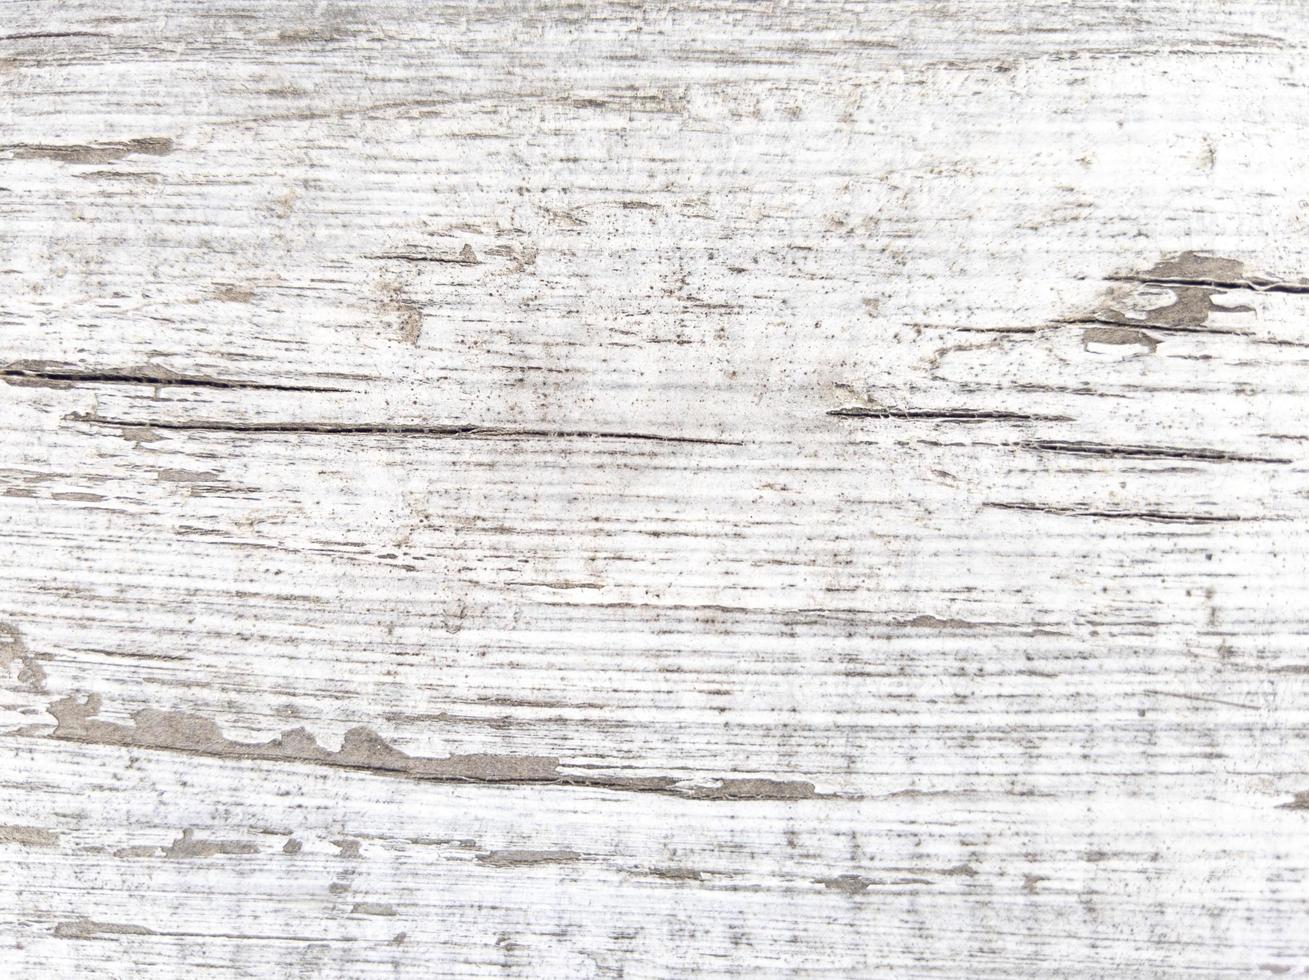 textura de madeira velha placa de madeira enrugada com foto de estoque de copyspace